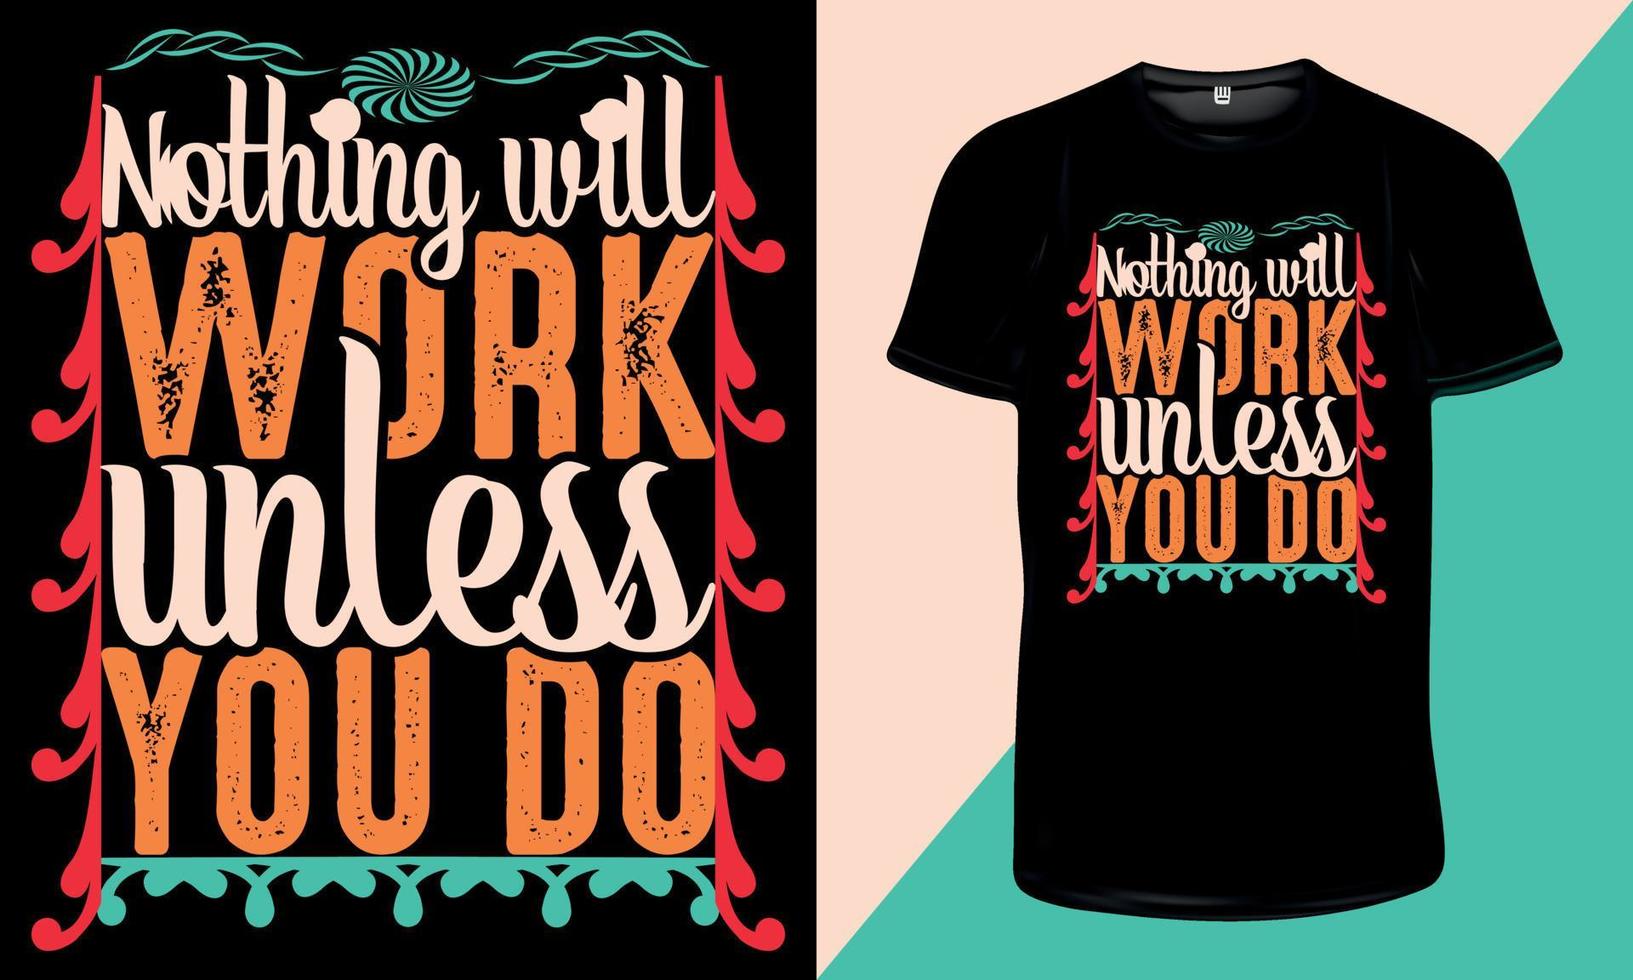 ingenting kommer att fungera om du inte gör- inspirerande citat och motiverande typografi t-shirtdesign för tryck vektor